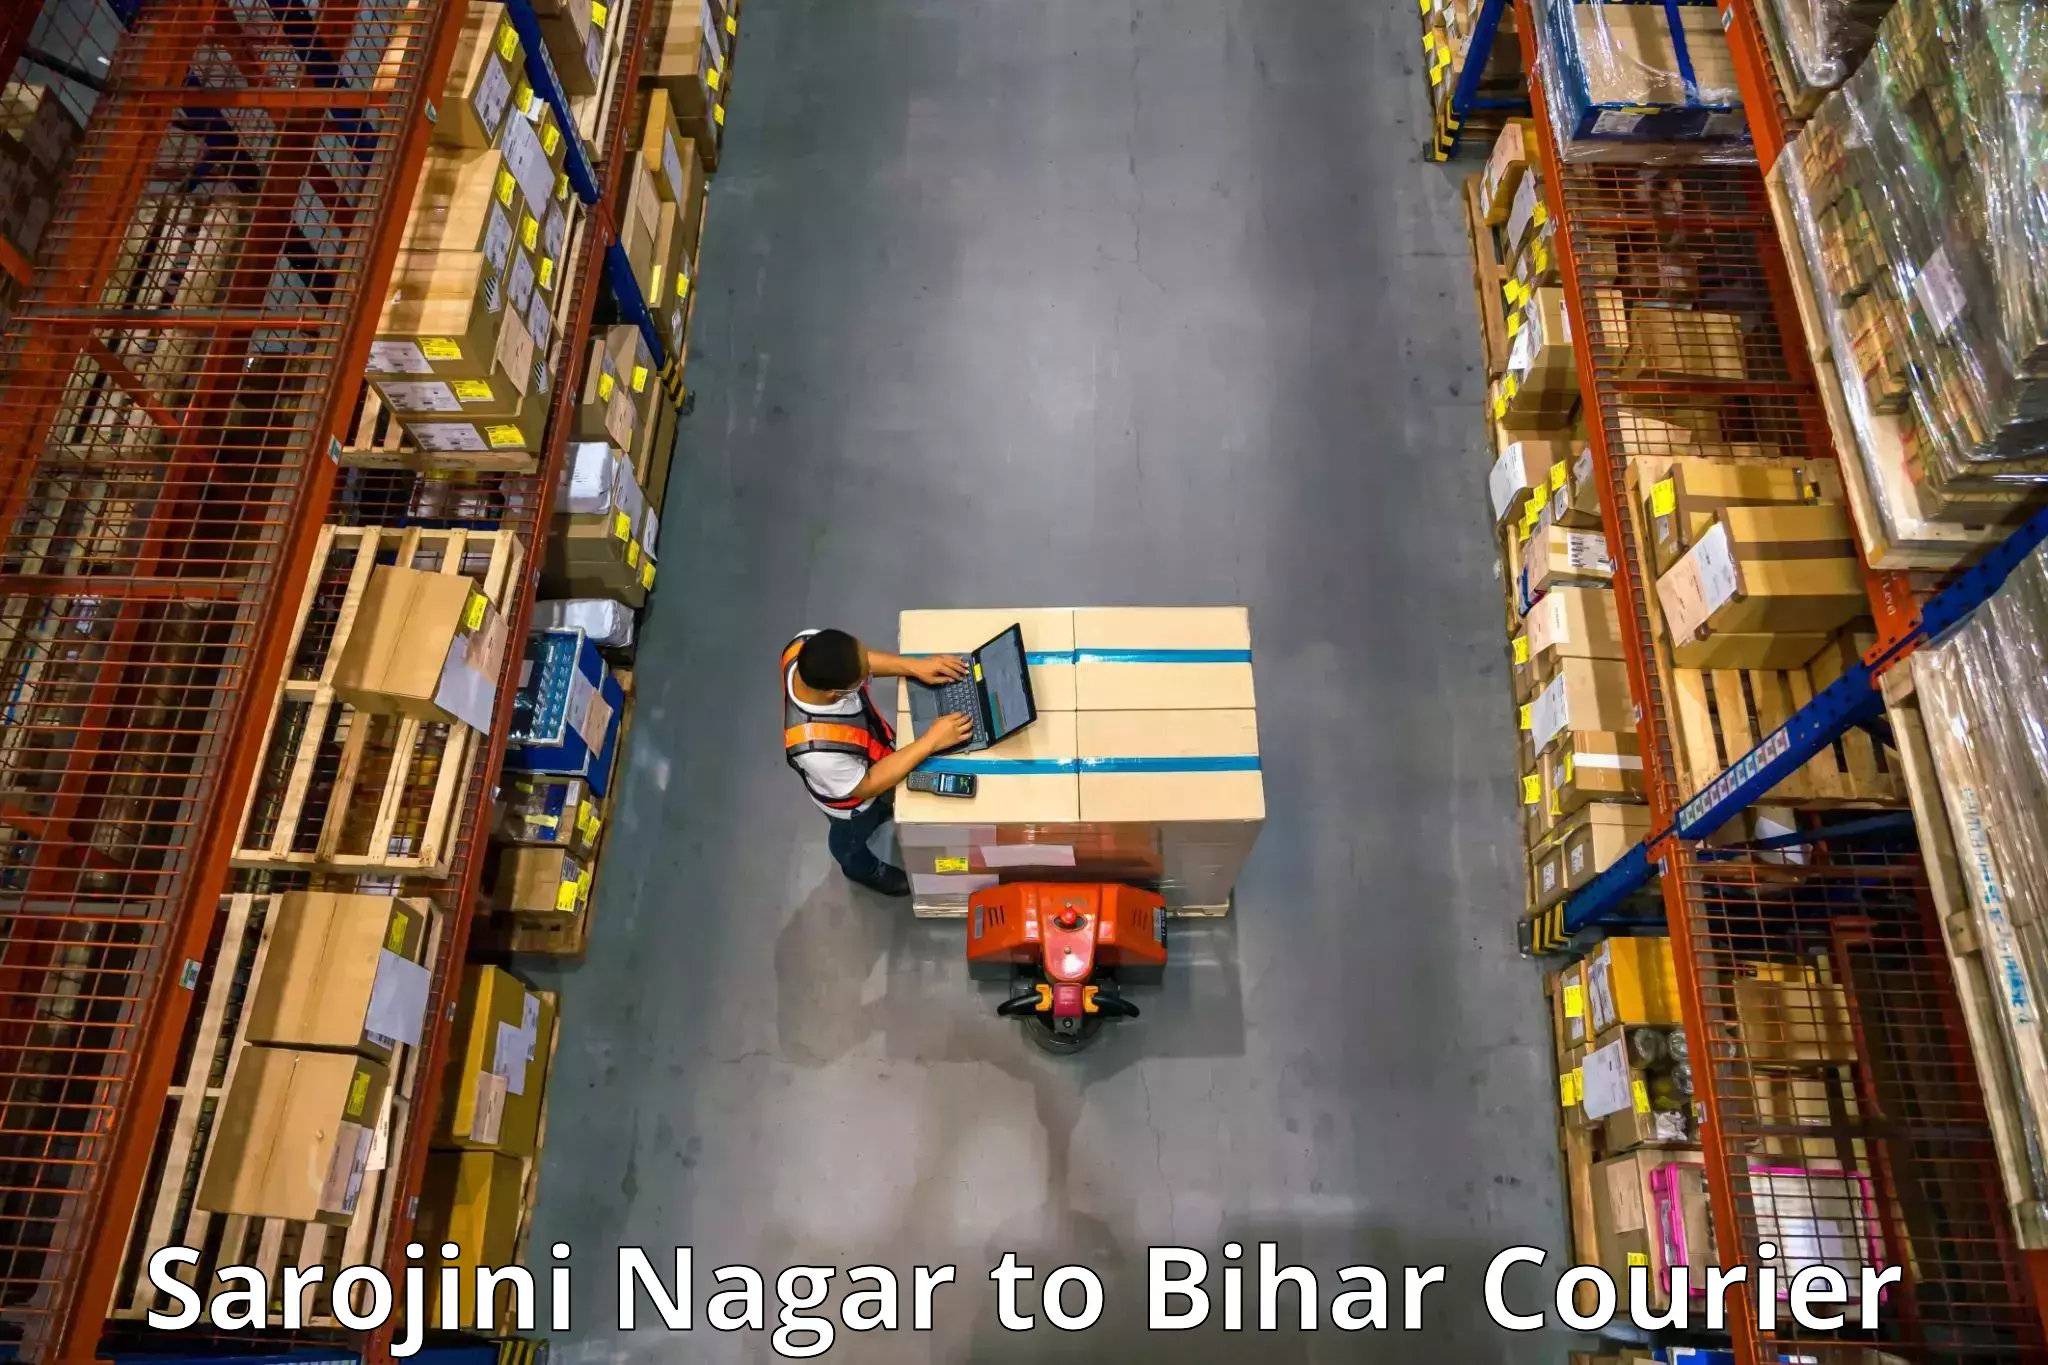 Furniture transport experts Sarojini Nagar to Supaul